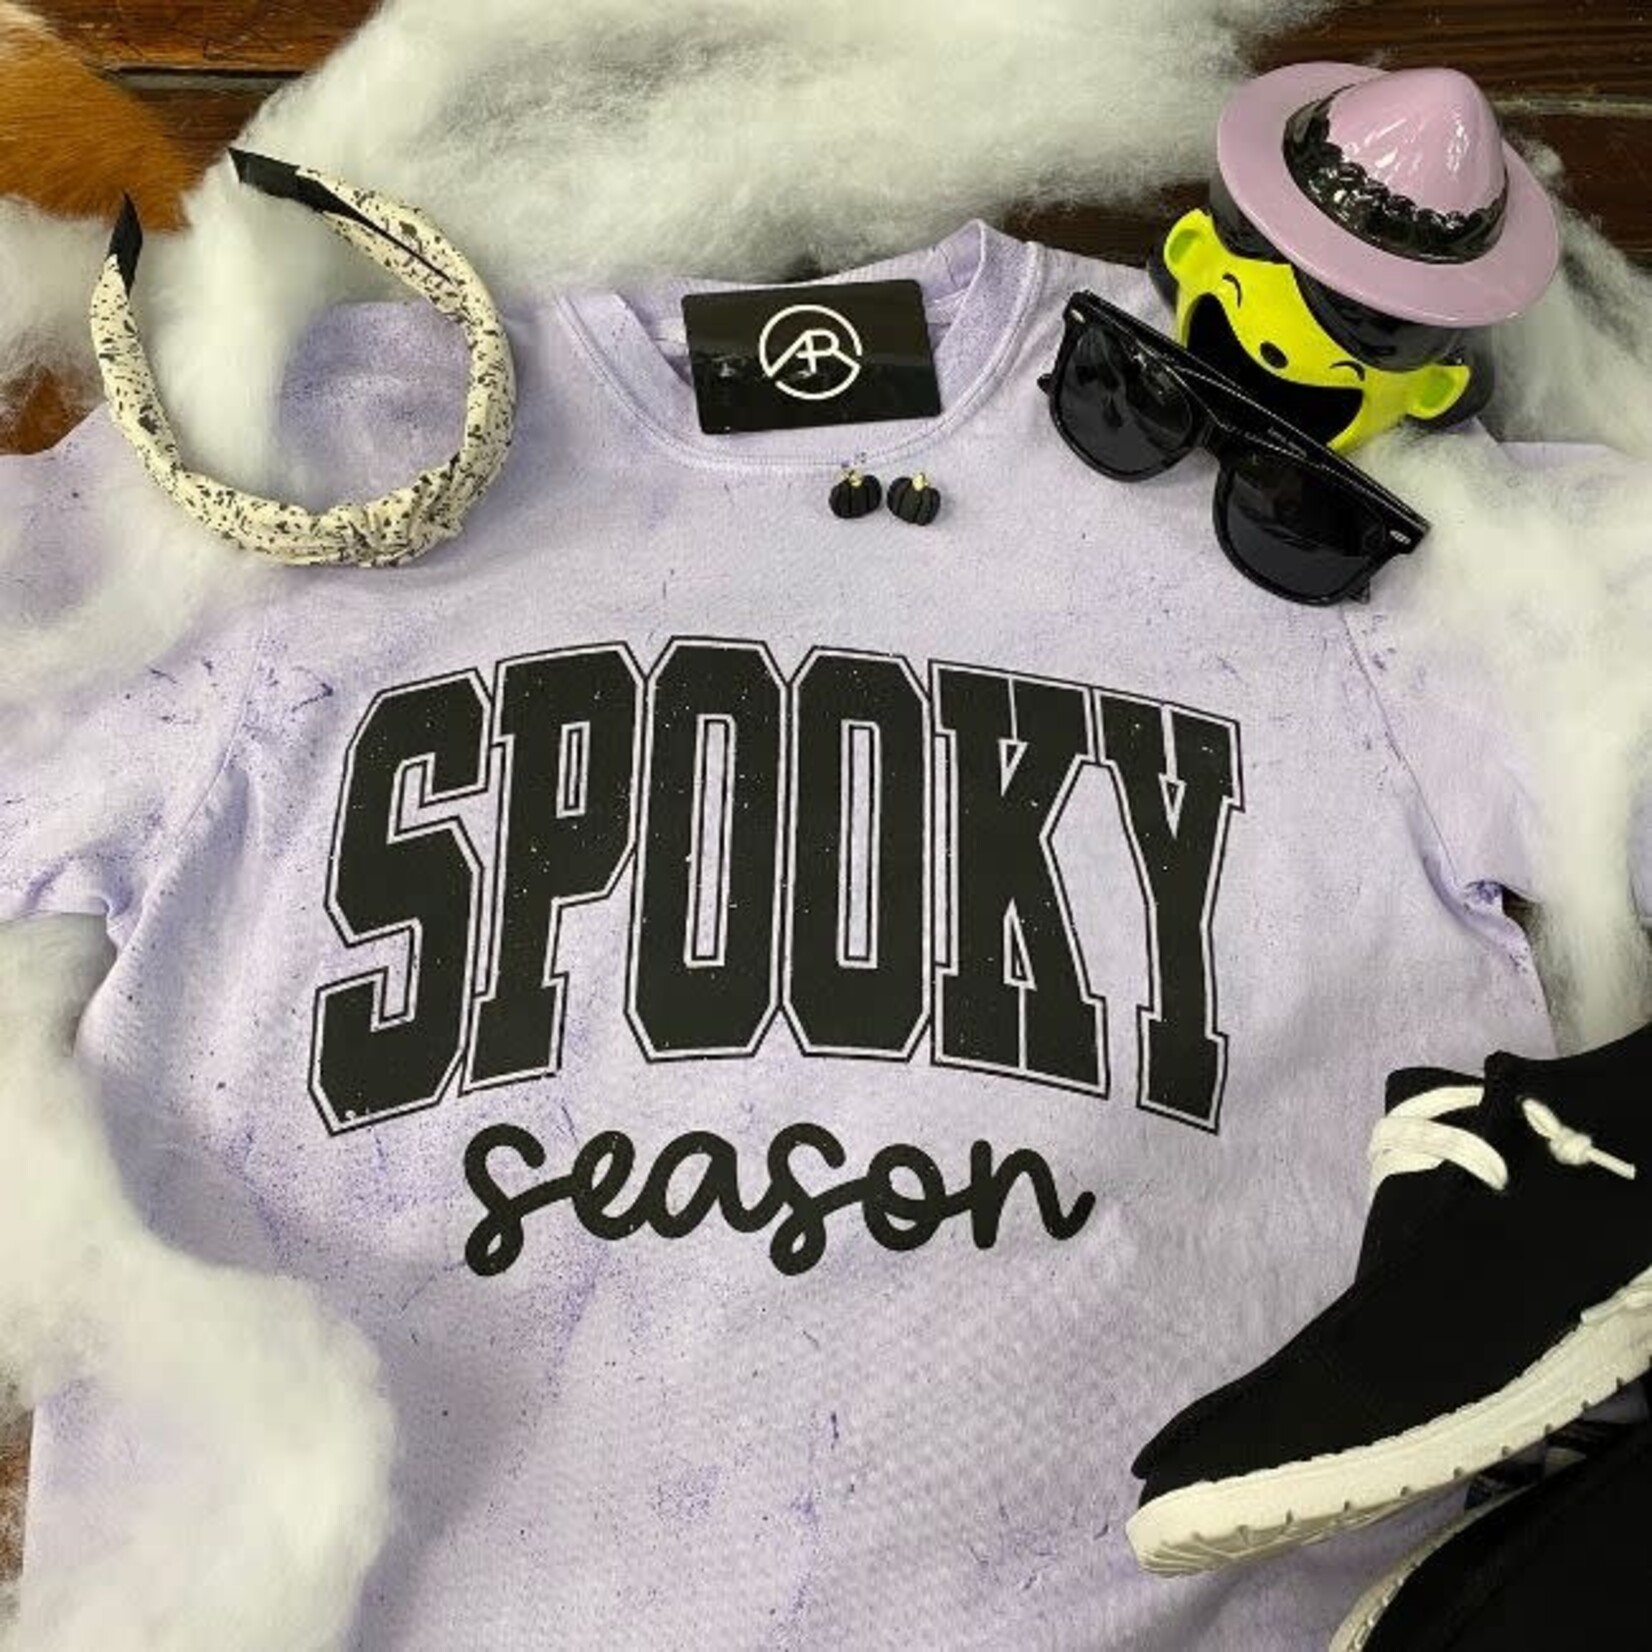 D&E Spooky Season